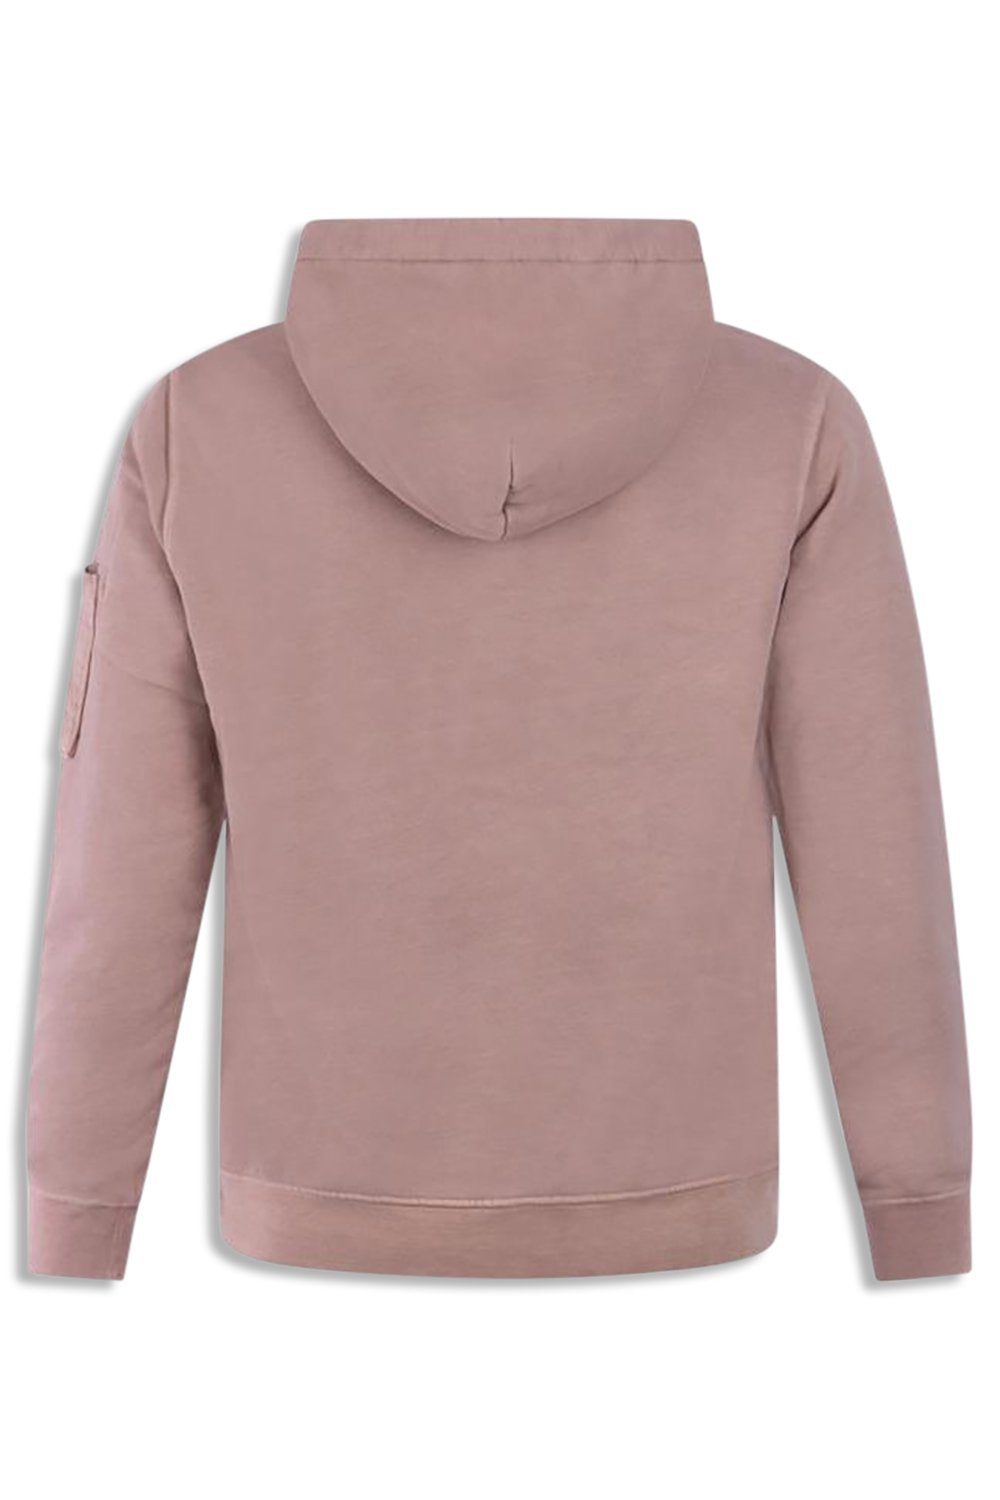 Men's C.P. Company Lens-Detail Cotton Pale Mauve Hooded sweatshirt